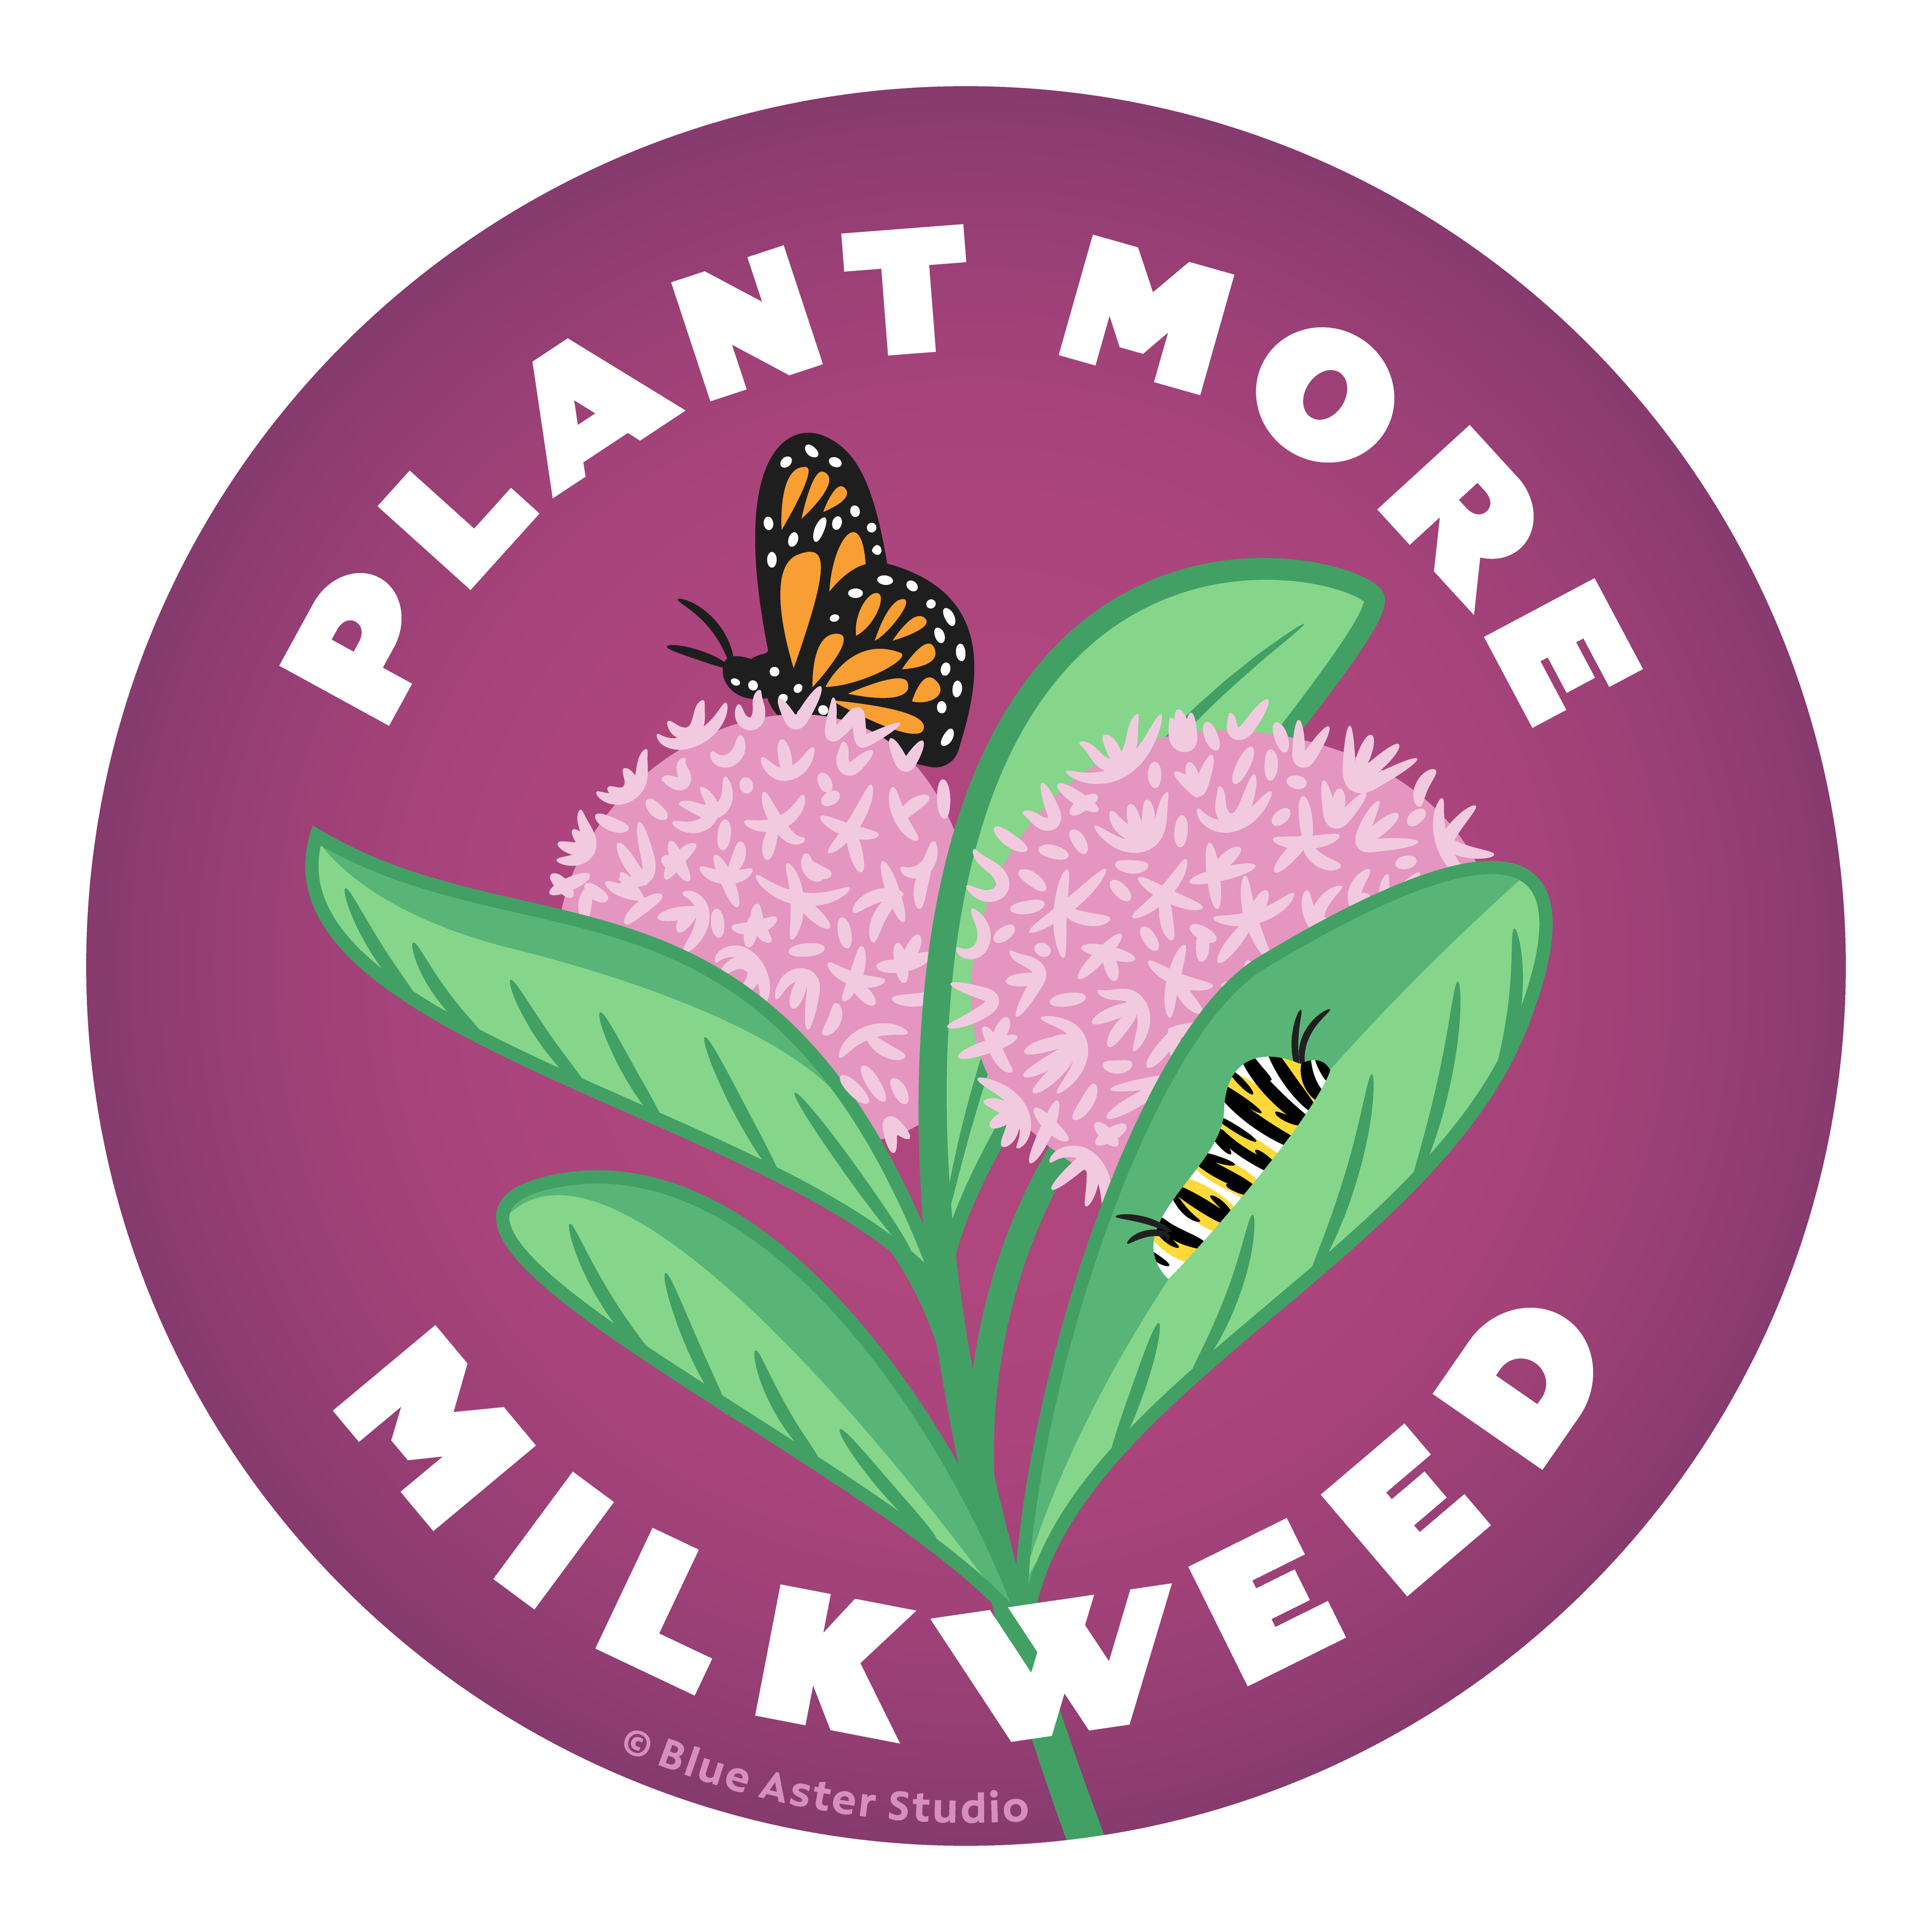 Plant More Milkweed Sticker